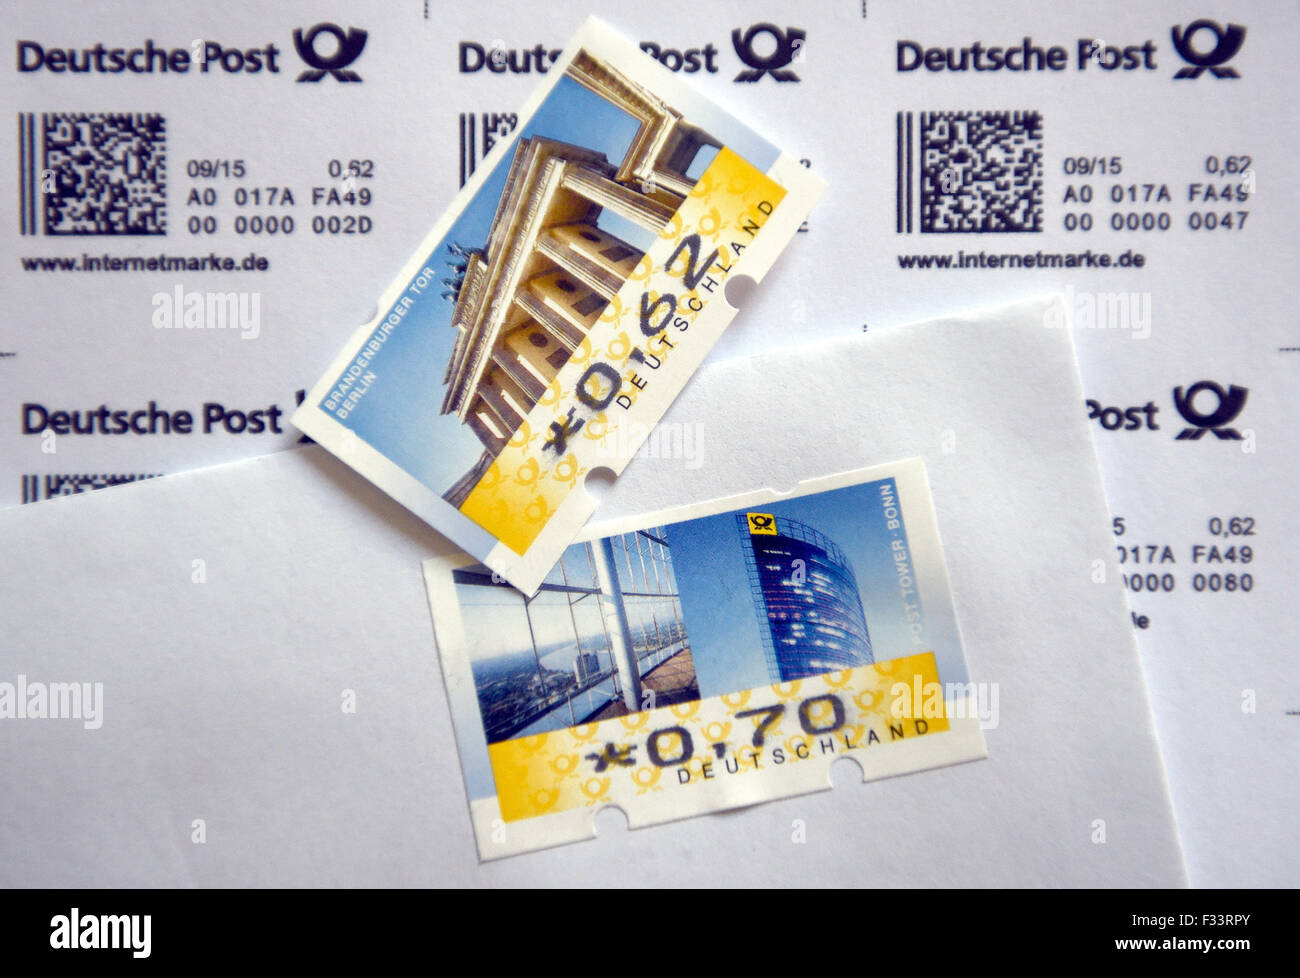 Cologne, Allemagne. Sep 29, 2015. ILLUSTRATION - deux timbres postes avec la valeur de 62 et 70 cents, qui ont été imprimées par une machine à timbres, sont vus à Cologne, Allemagne, 29 septembre 2015. Selon le journal "Bild", le port d'une lettre type sera porté de 62 à 70 cents en 2016. PHOTO : HENNING KAISER/DPA/Alamy Live News Banque D'Images